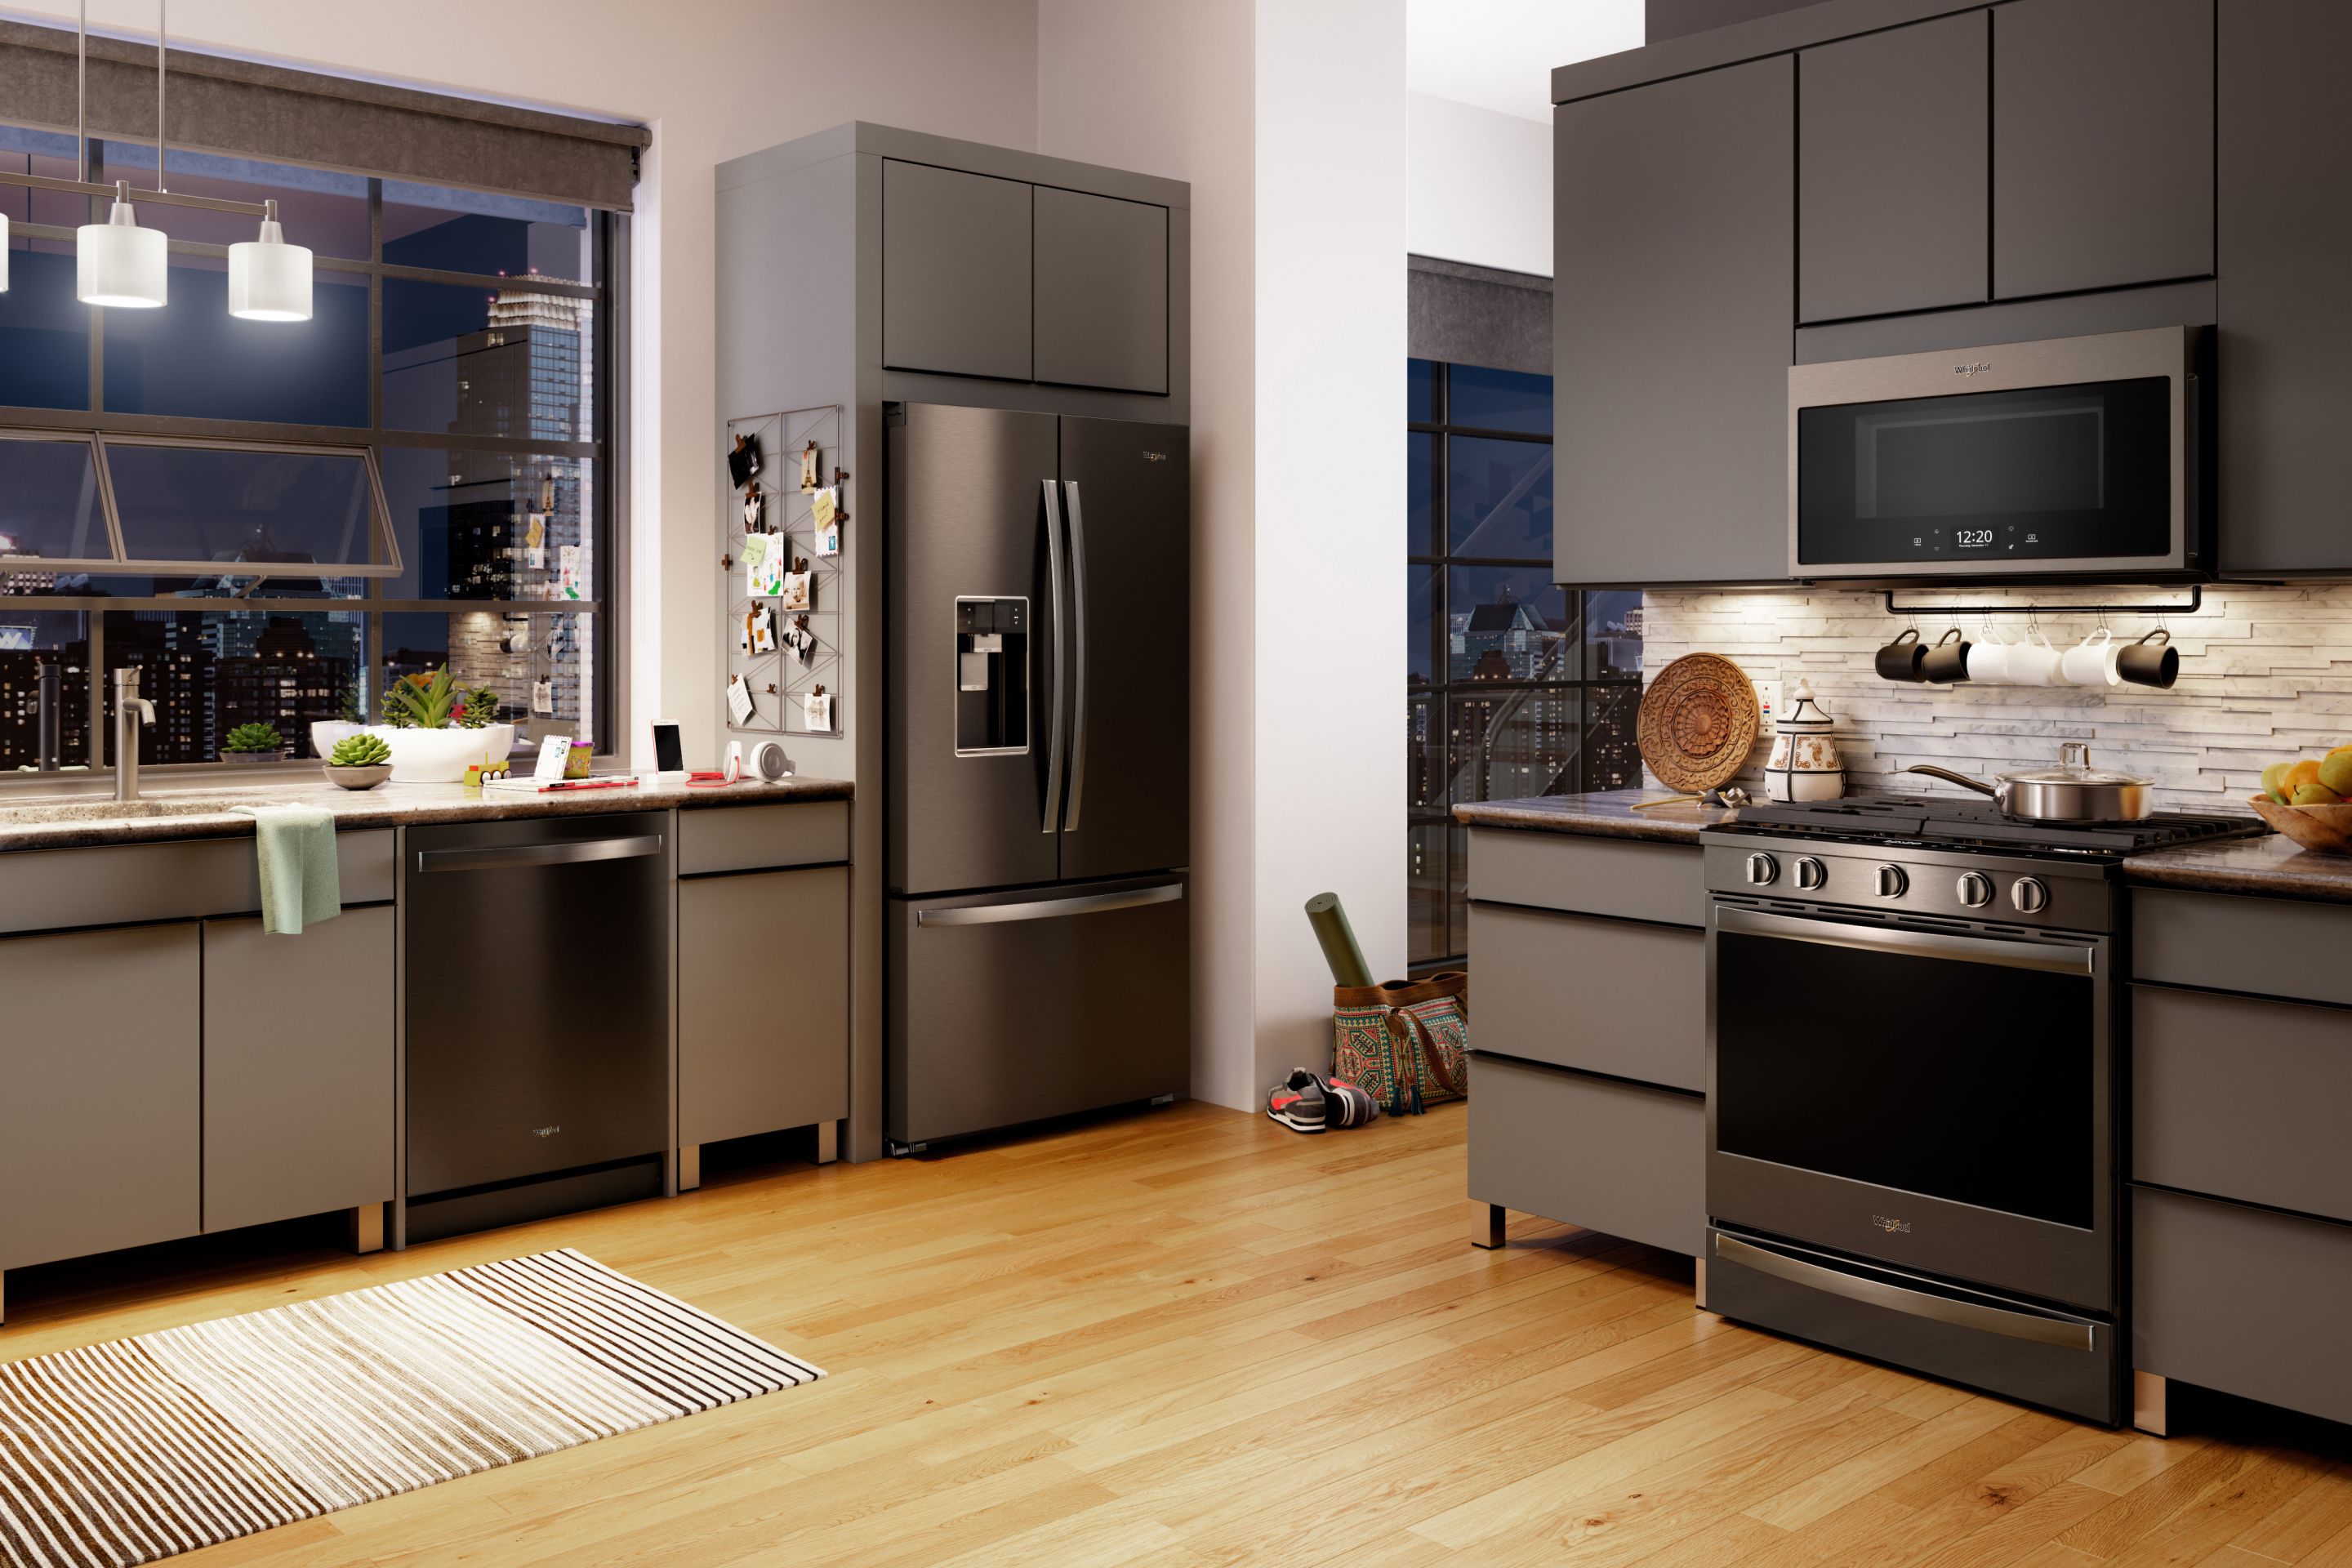 kitchen design with appliance pulls